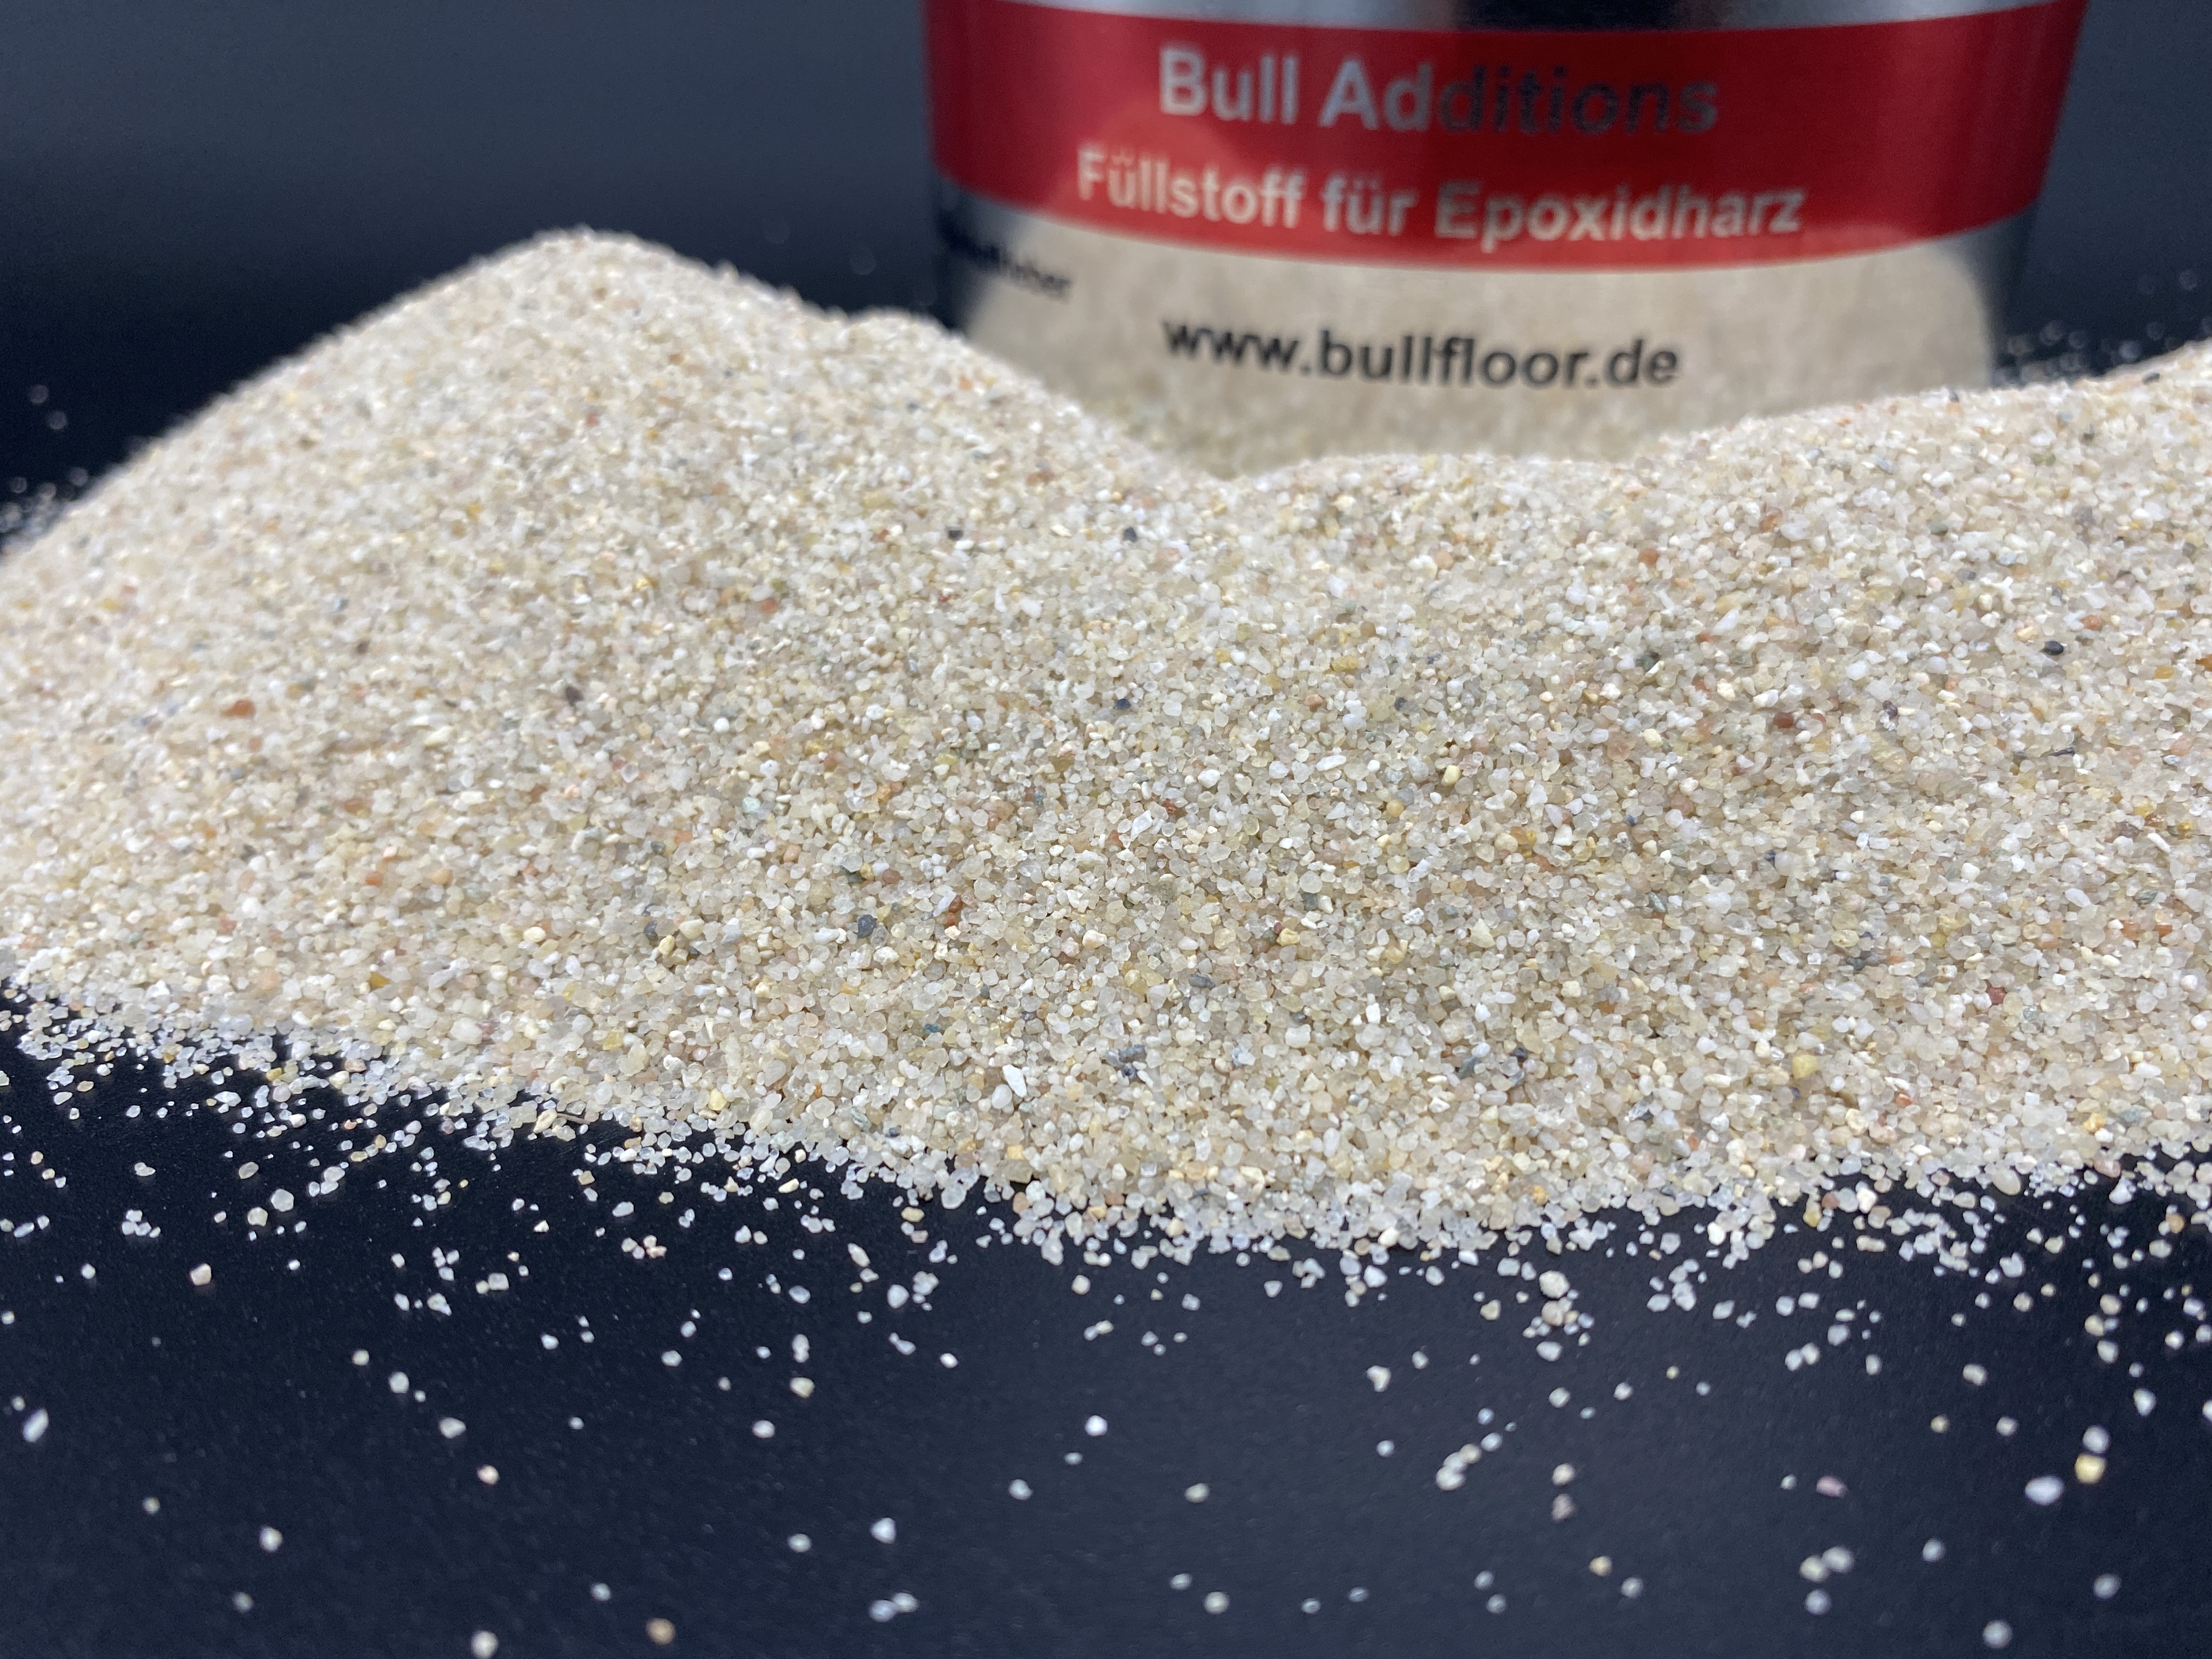 Bull Additions® Füllstoff für Epoxidharz